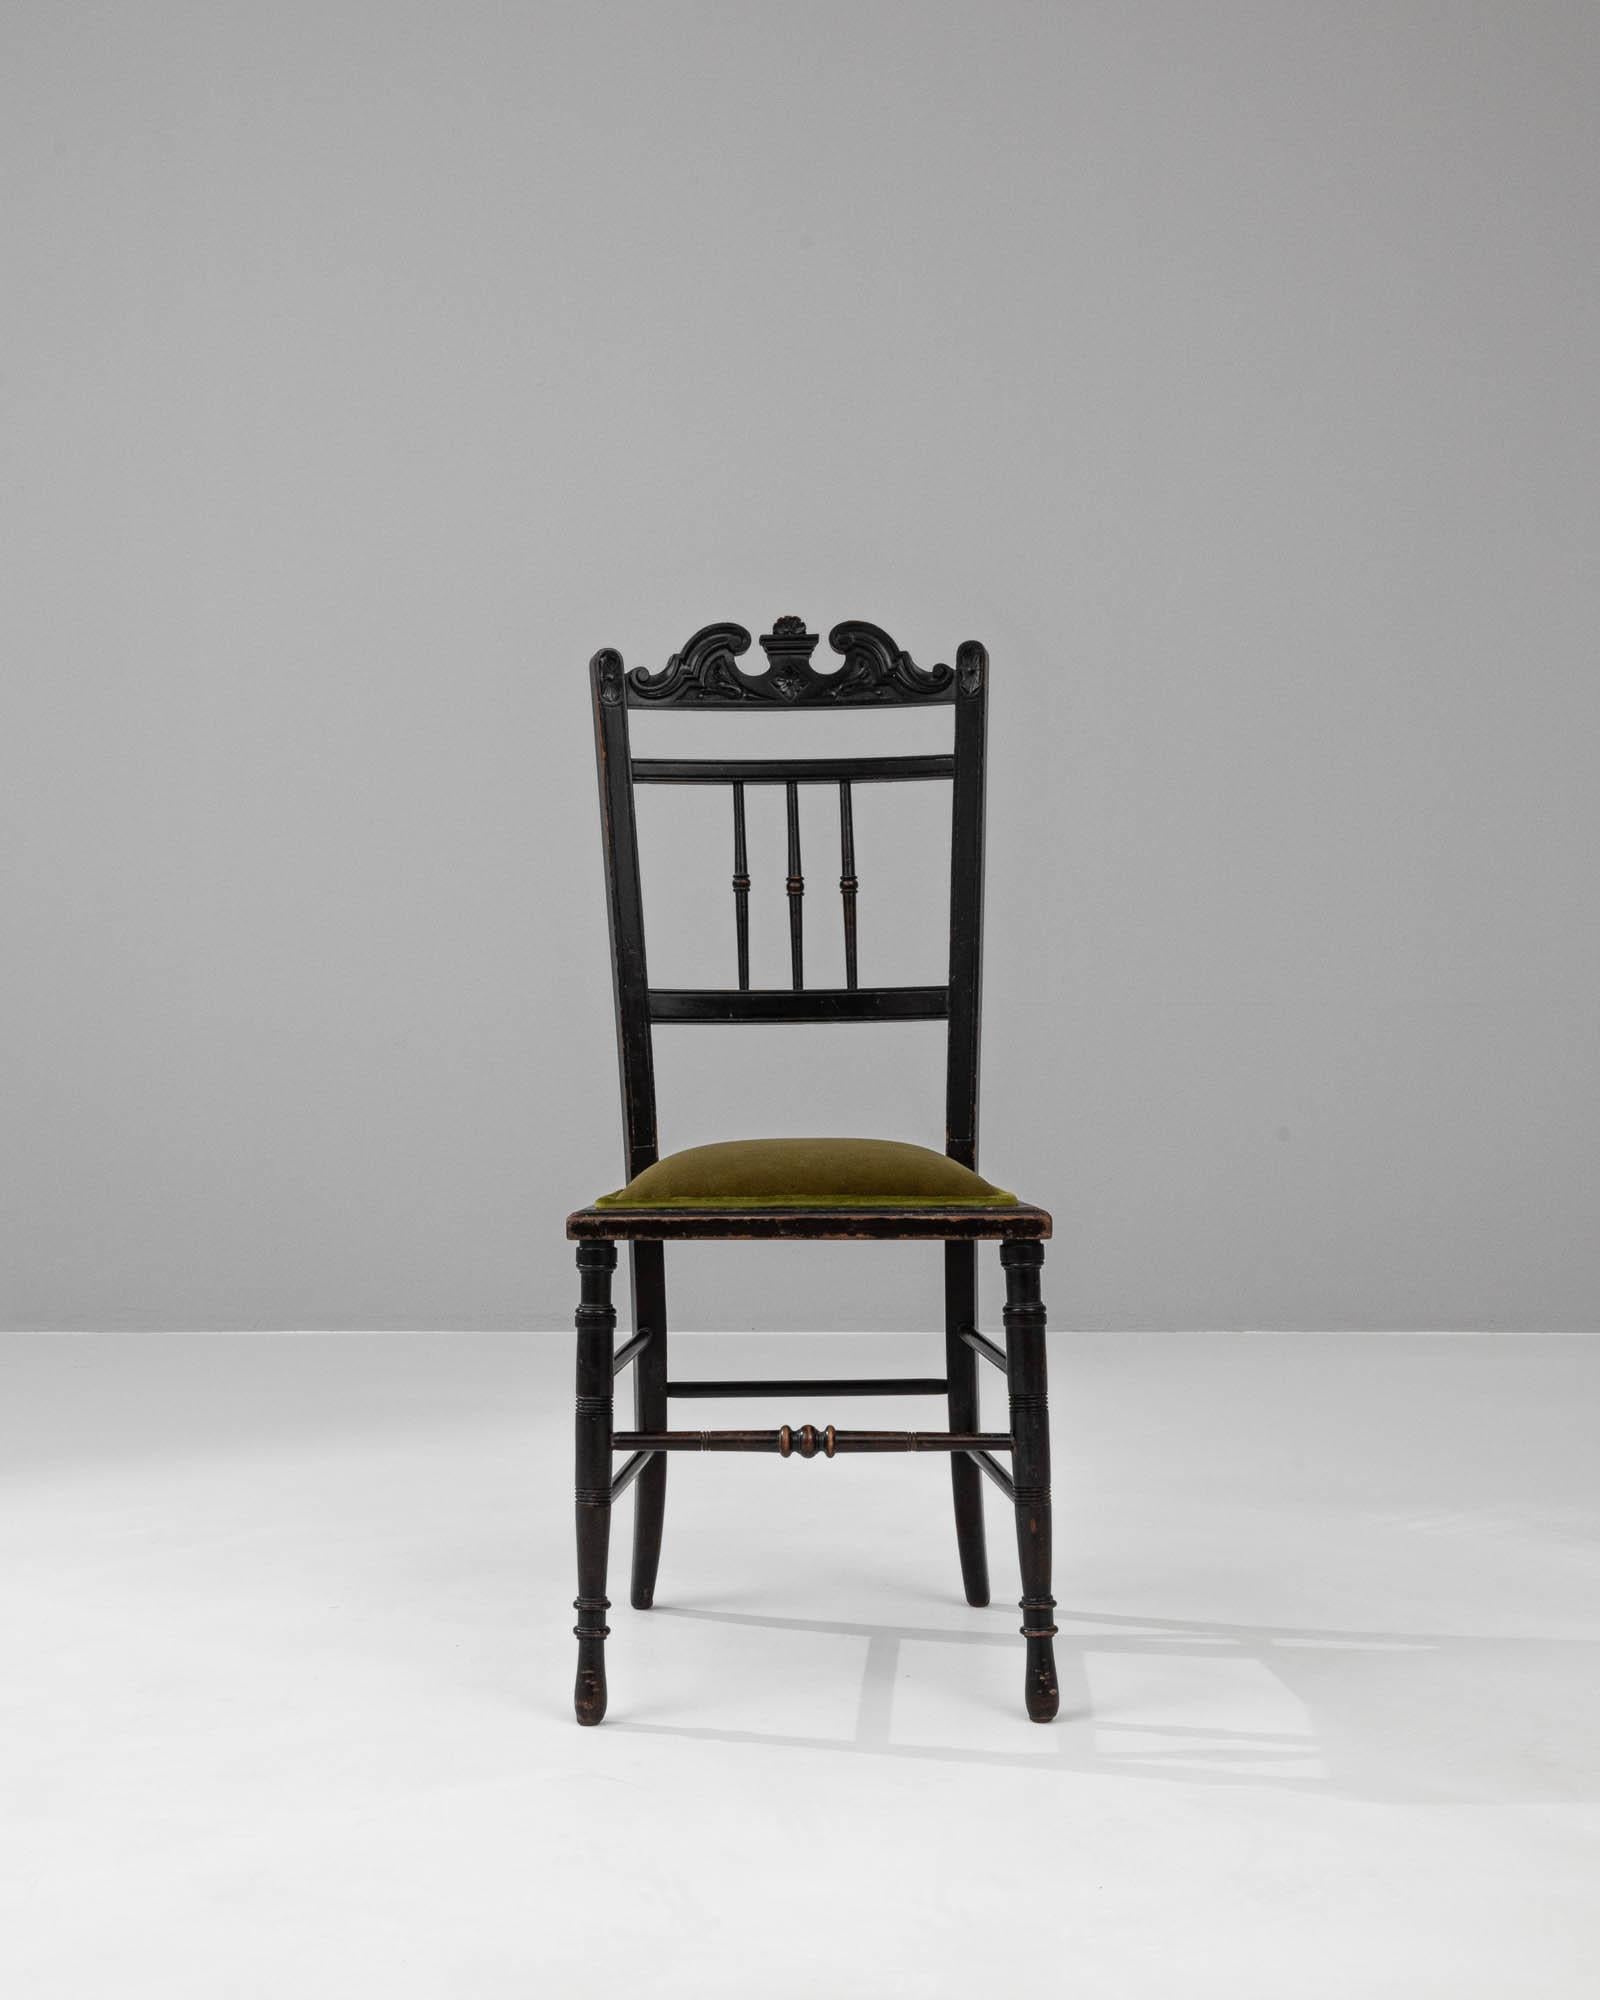 Voici la quintessence du charme parisien sous la forme de cette chaise de bistrot française en bois du XIXe siècle. Une étonnante silhouette d'ornements sculptés à la main orne la traverse supérieure, offrant une touche d'élégance rococo, tandis que